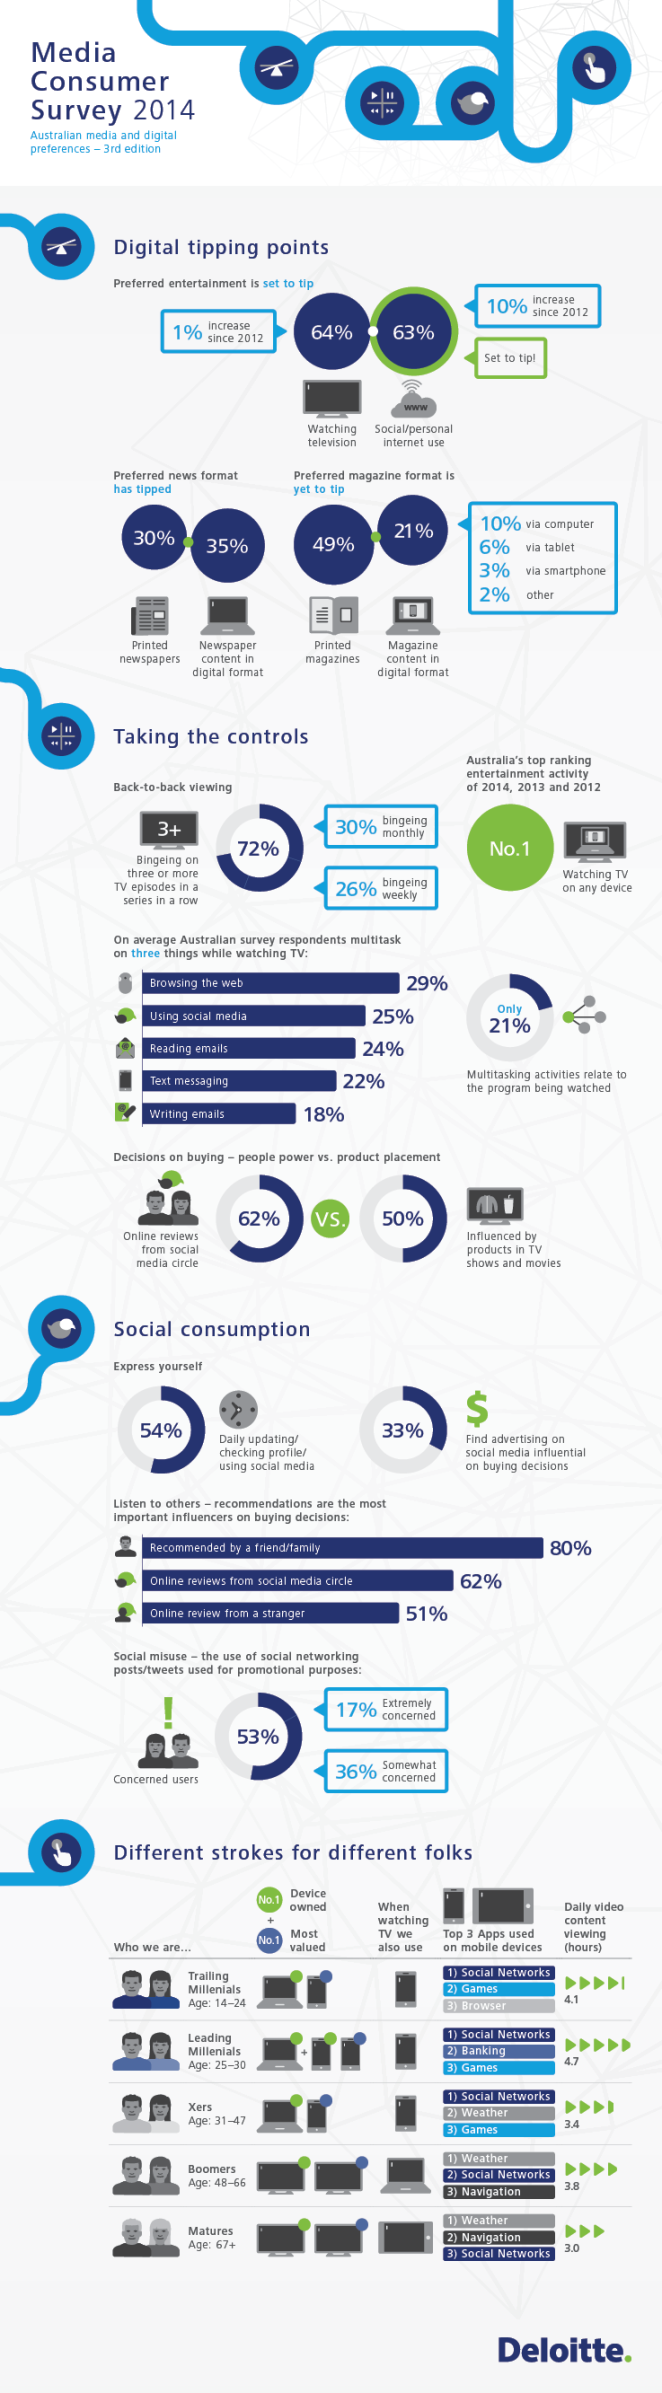 deloitte-au-tmt-media-consumer-survey-2014-infographic-031014